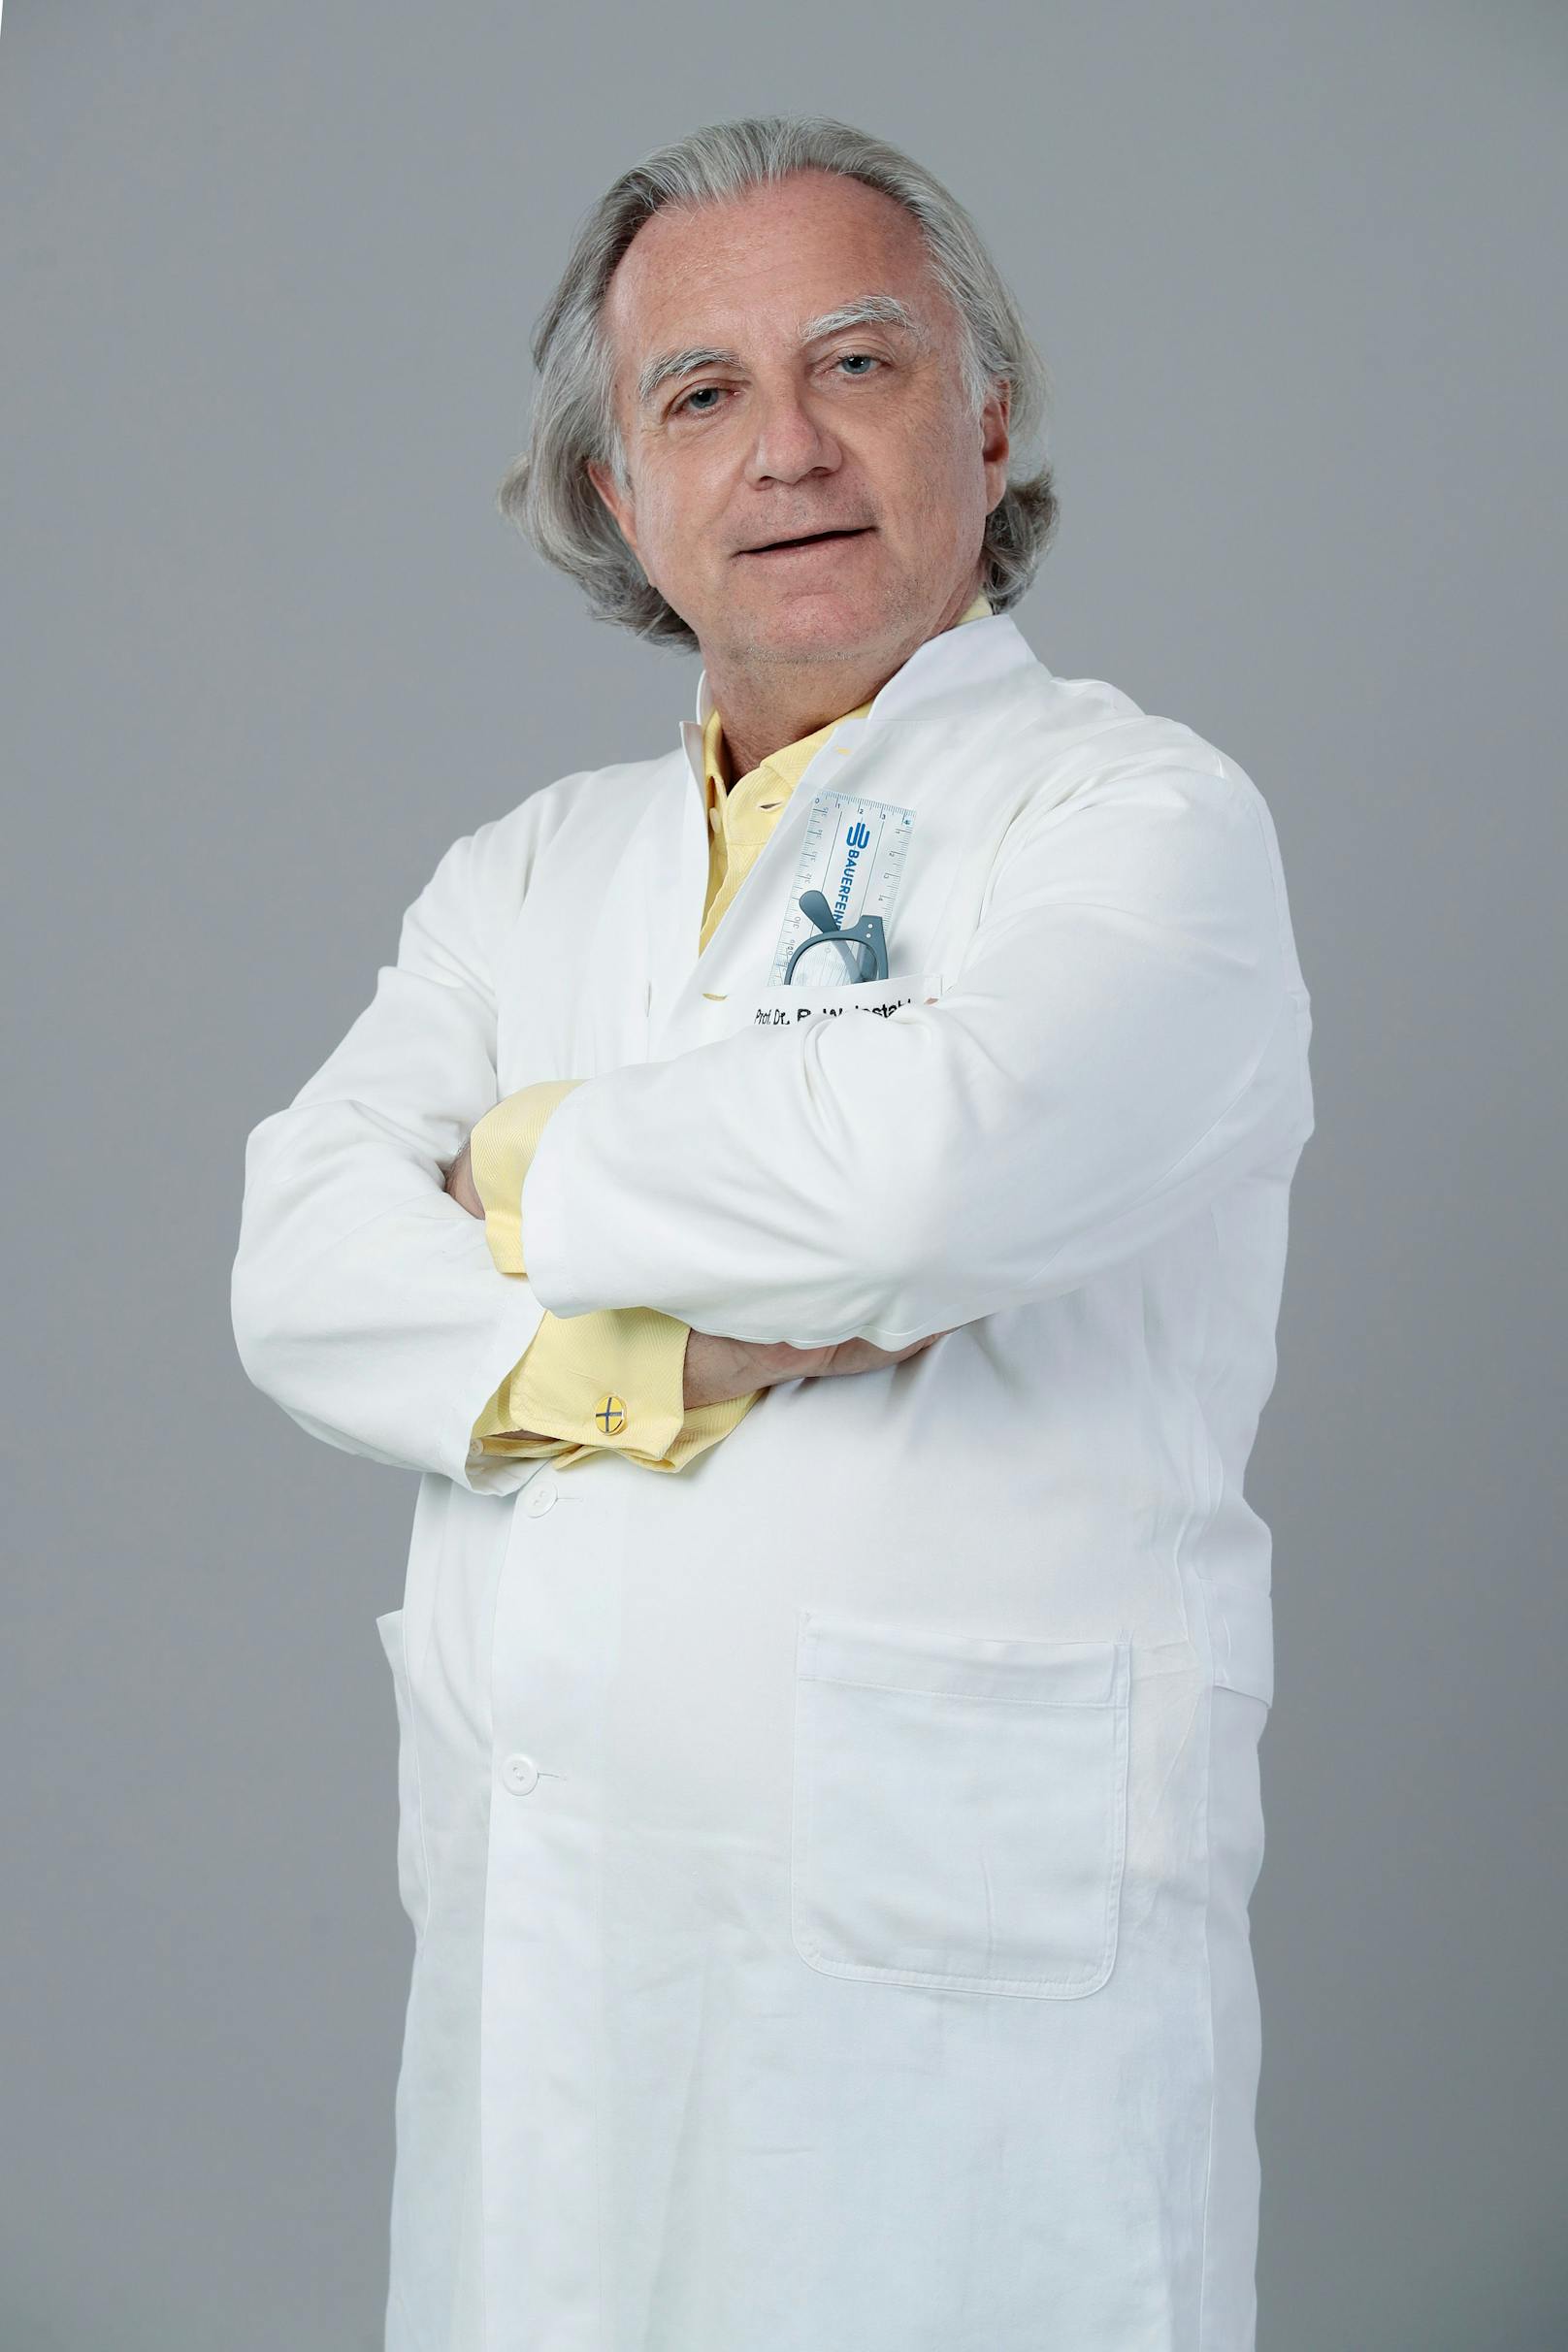 Star-Chirurg Reinhard Weinstabl macht seine Parkinson-Erkrankung öffentlich